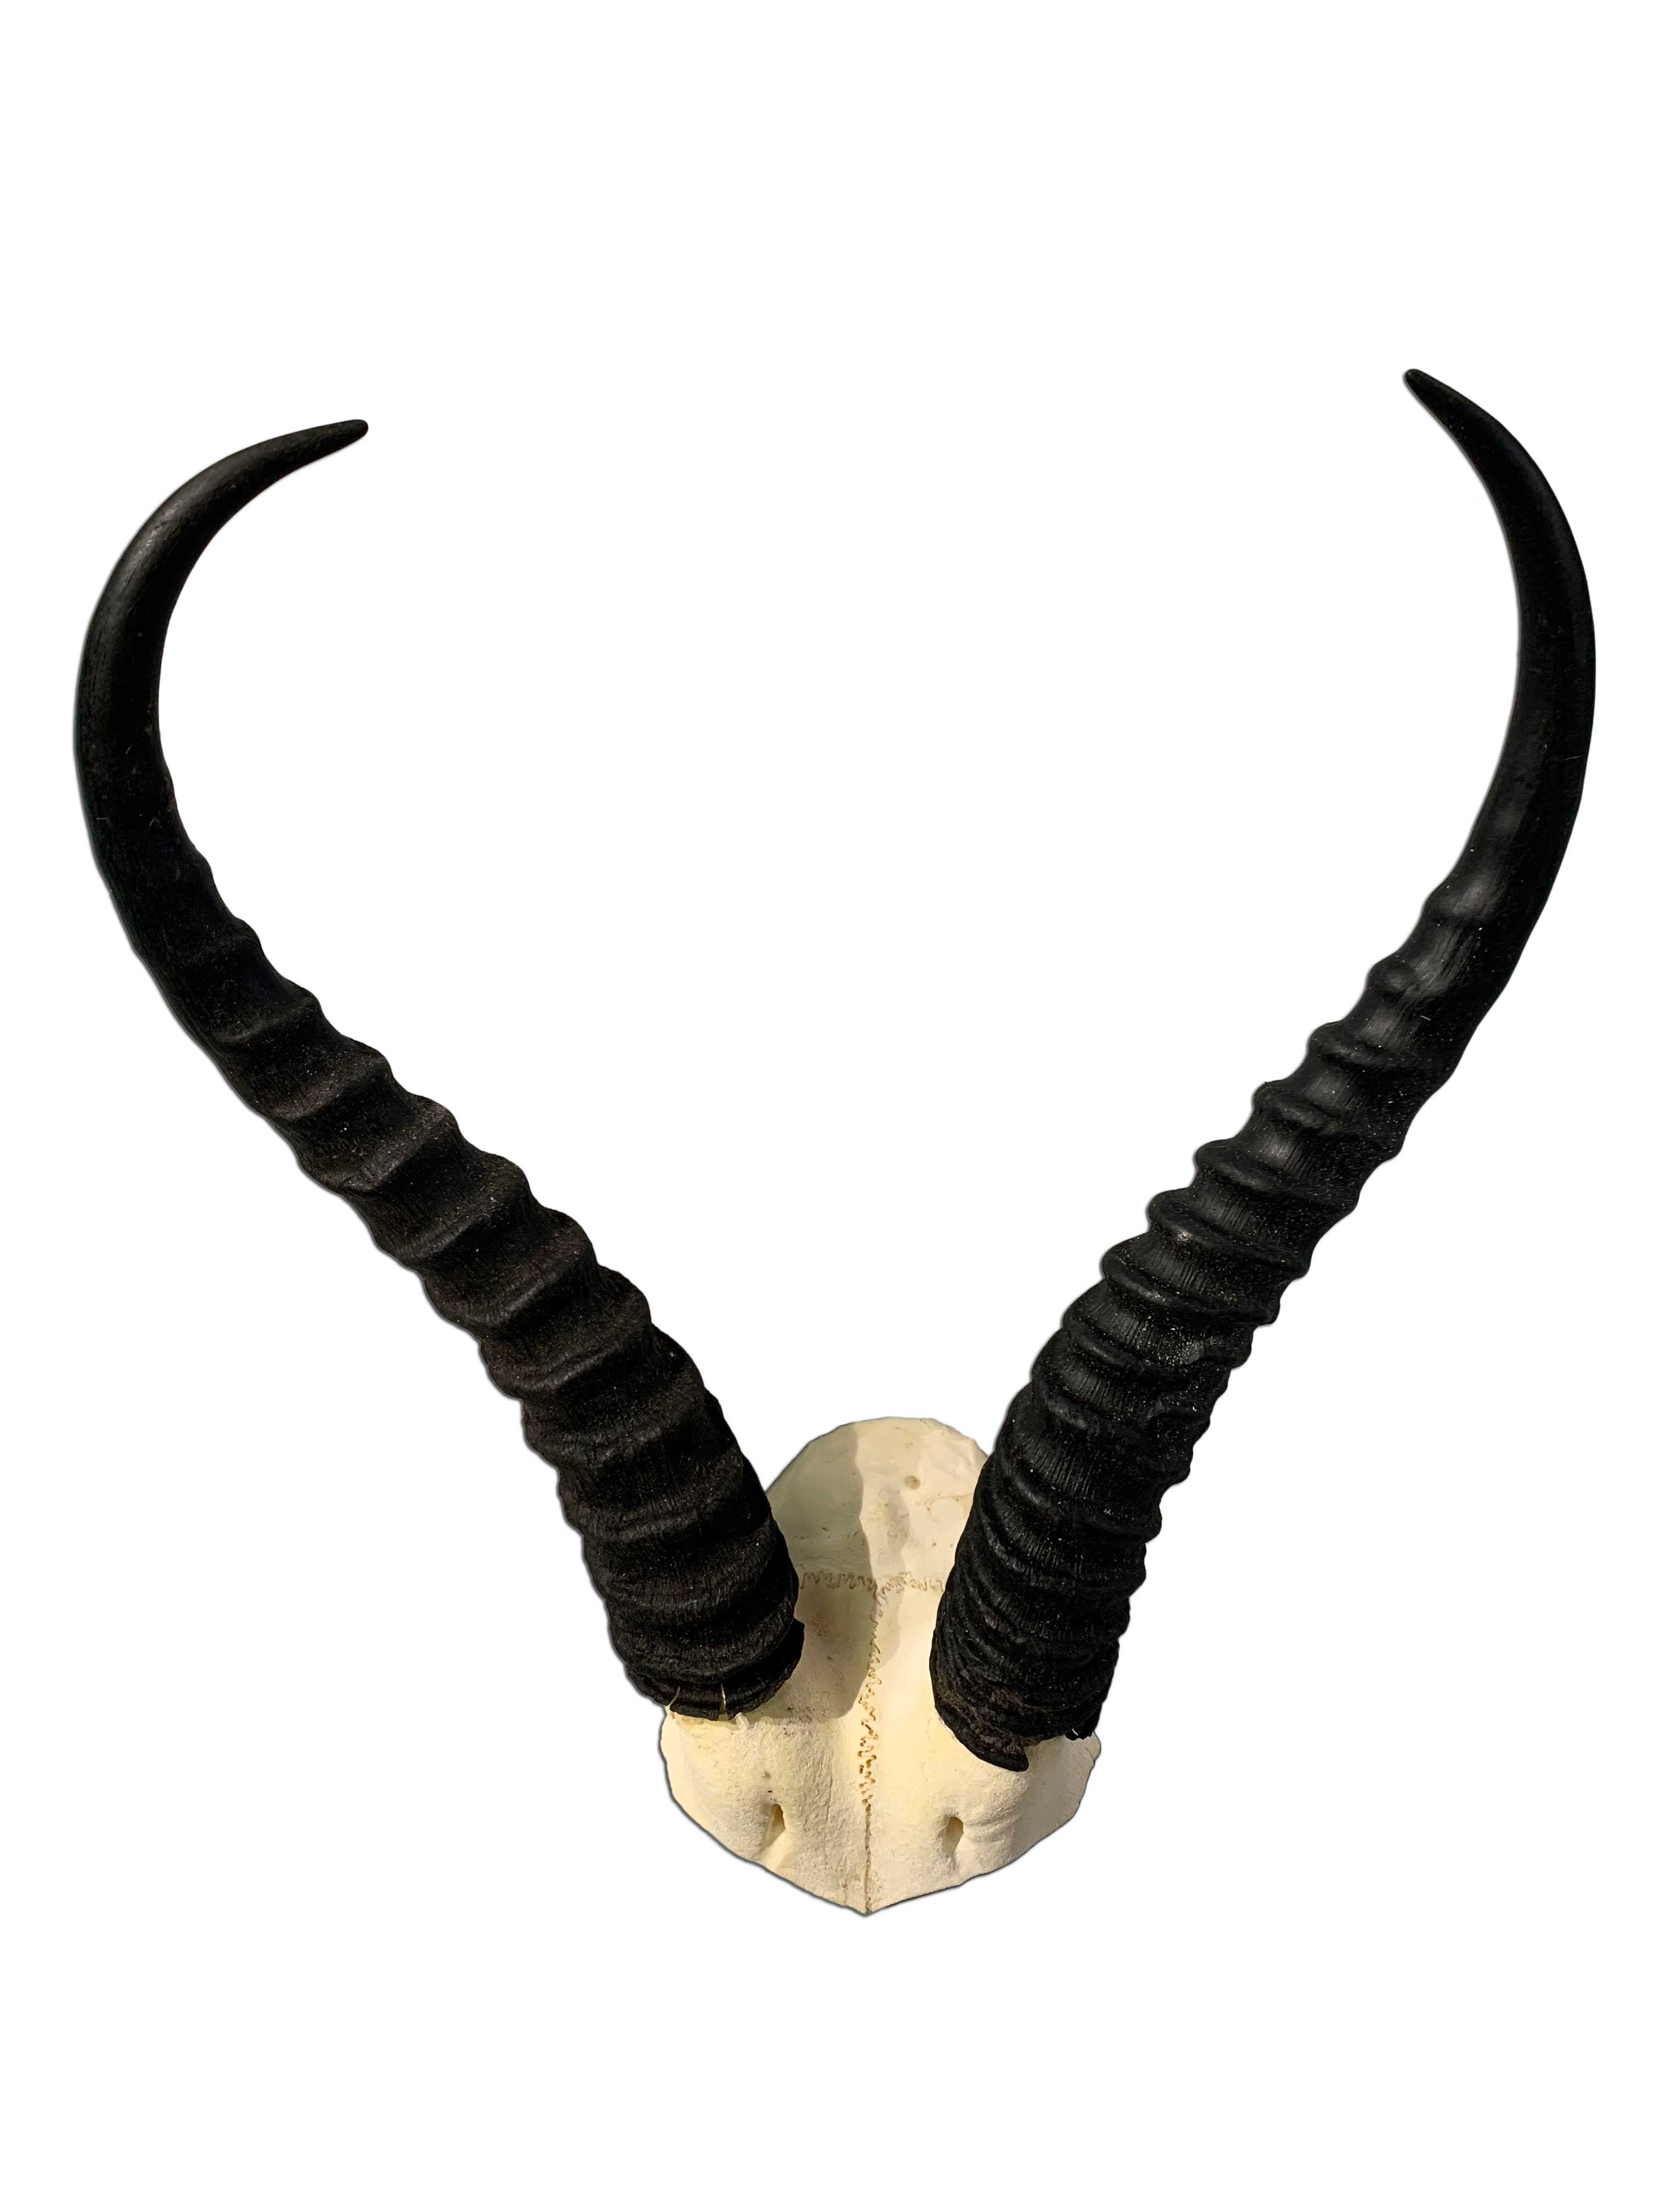 Springbok Skull V-shape, Real Springbok Skull (skull cap only) with detachable horns